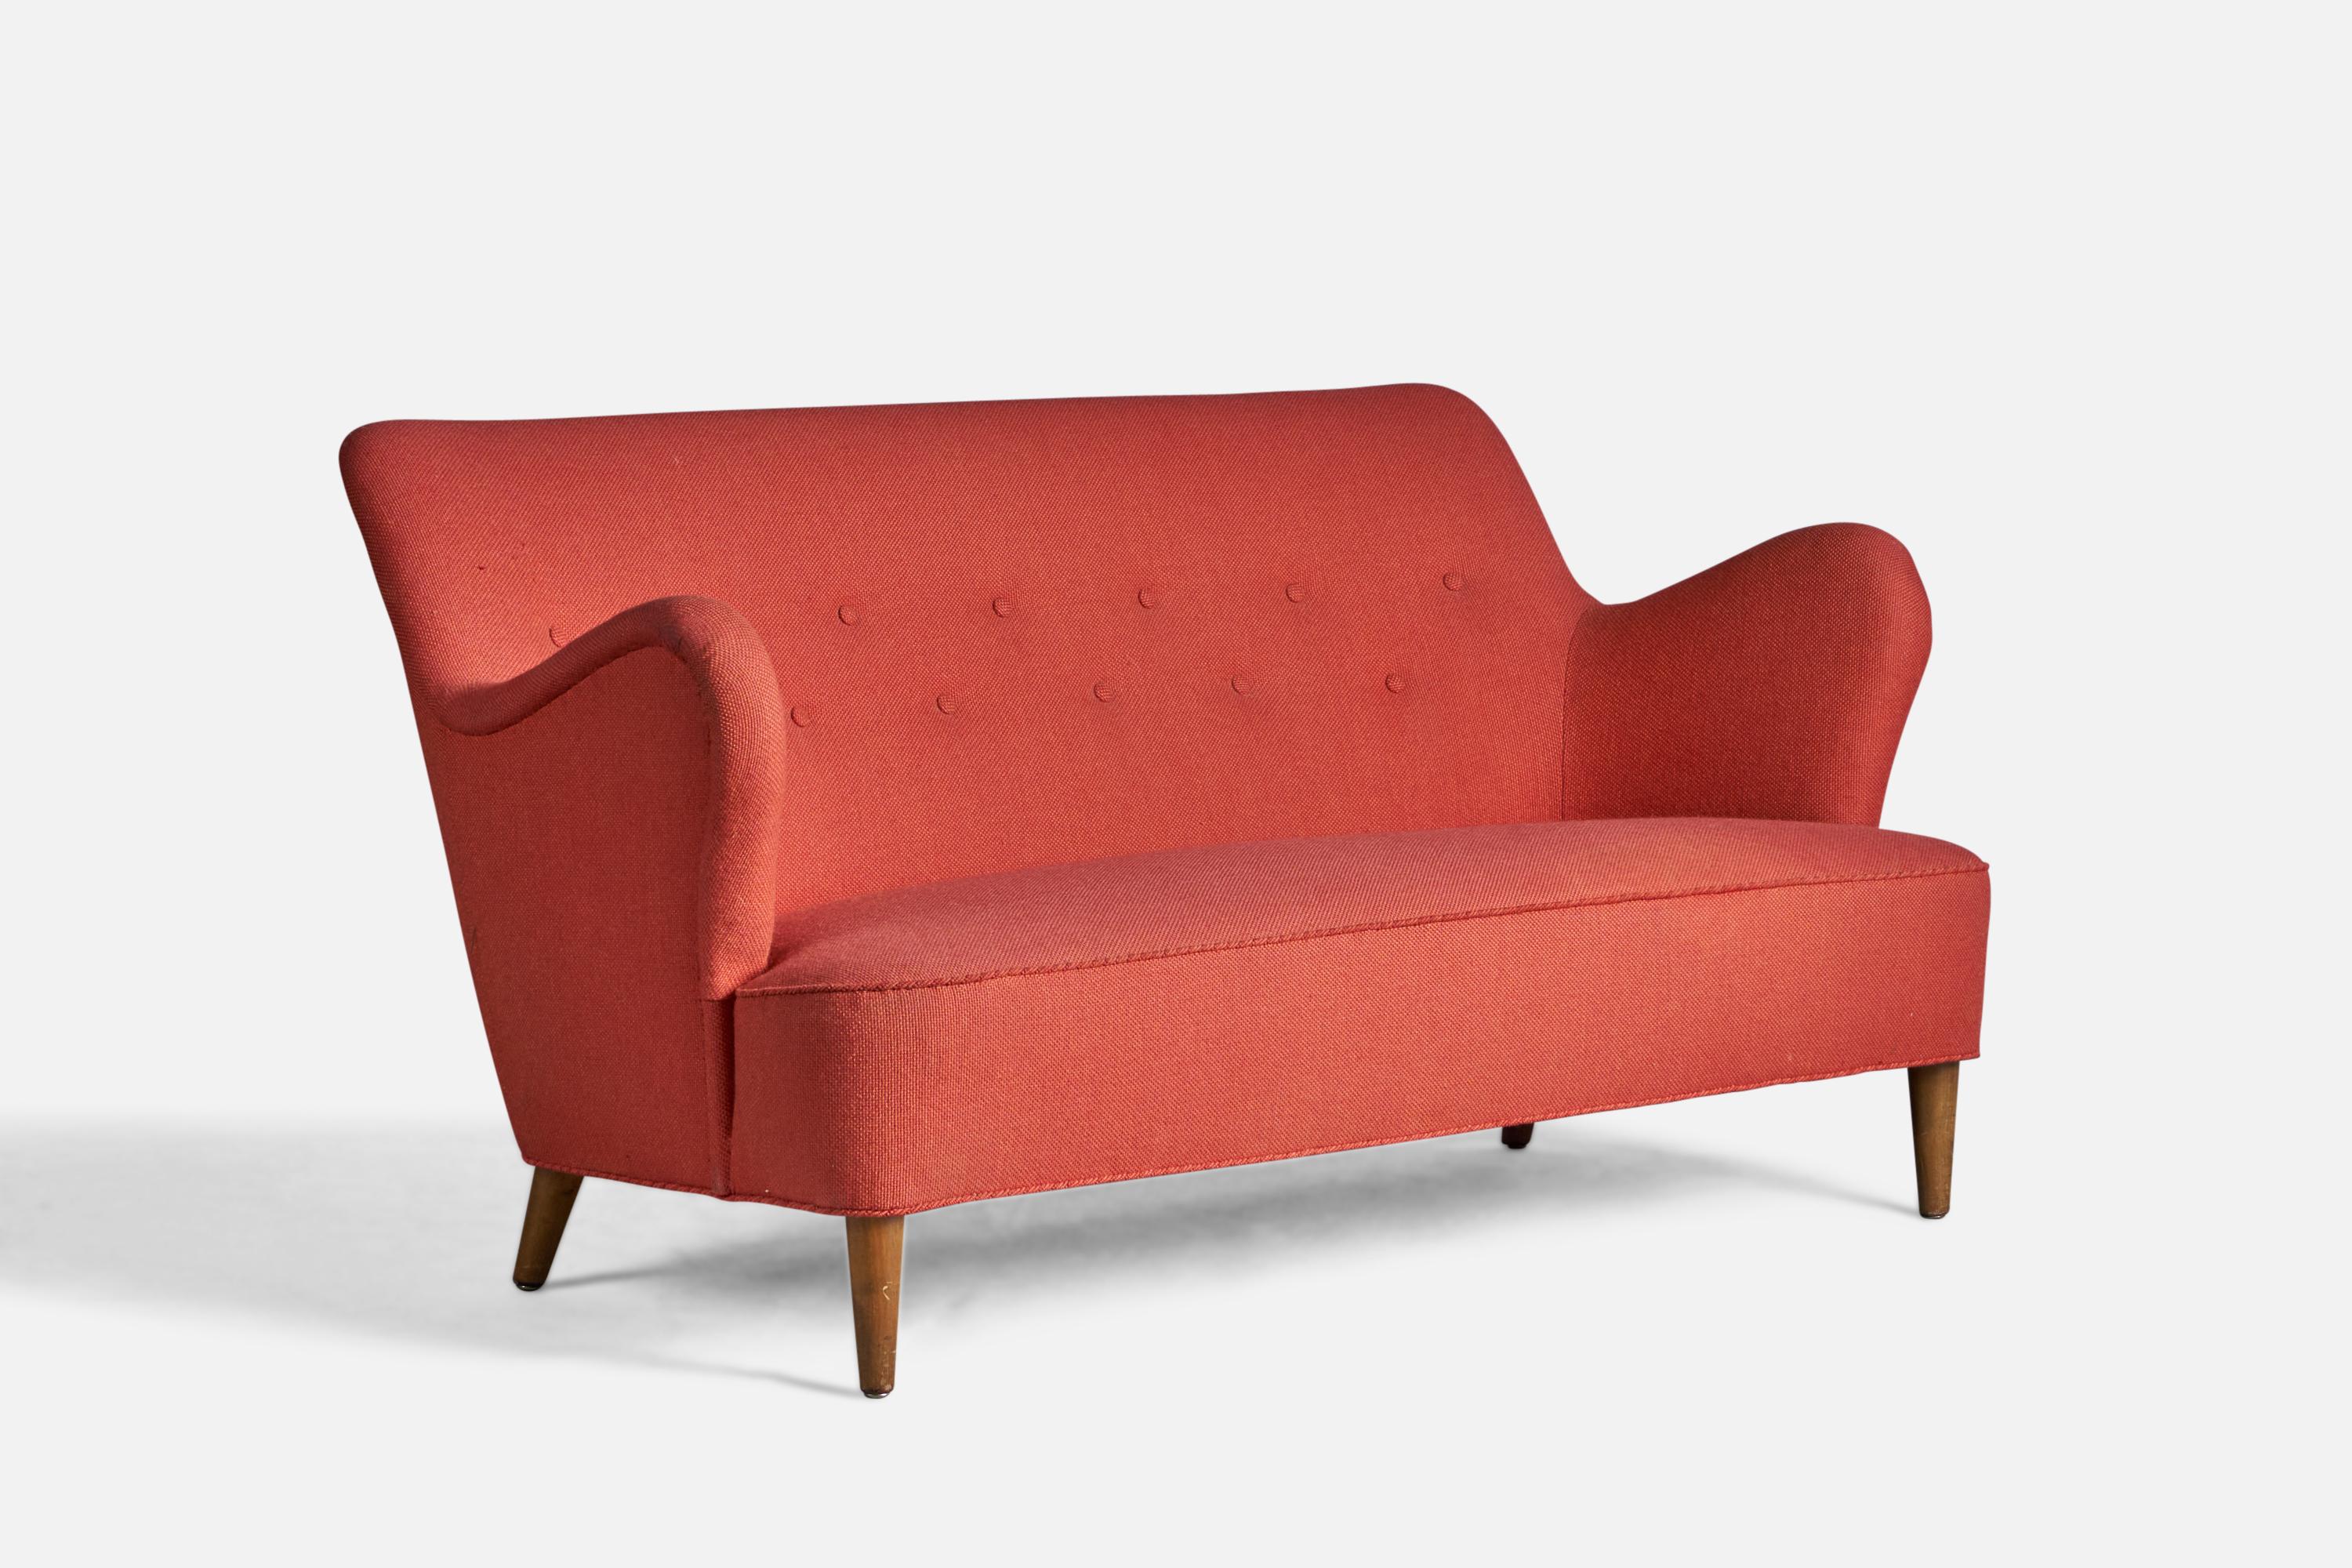 Ein organisches Sofa aus Holz und rotem Stoff, entworfen und hergestellt in Dänemark, 1940er Jahre.

15